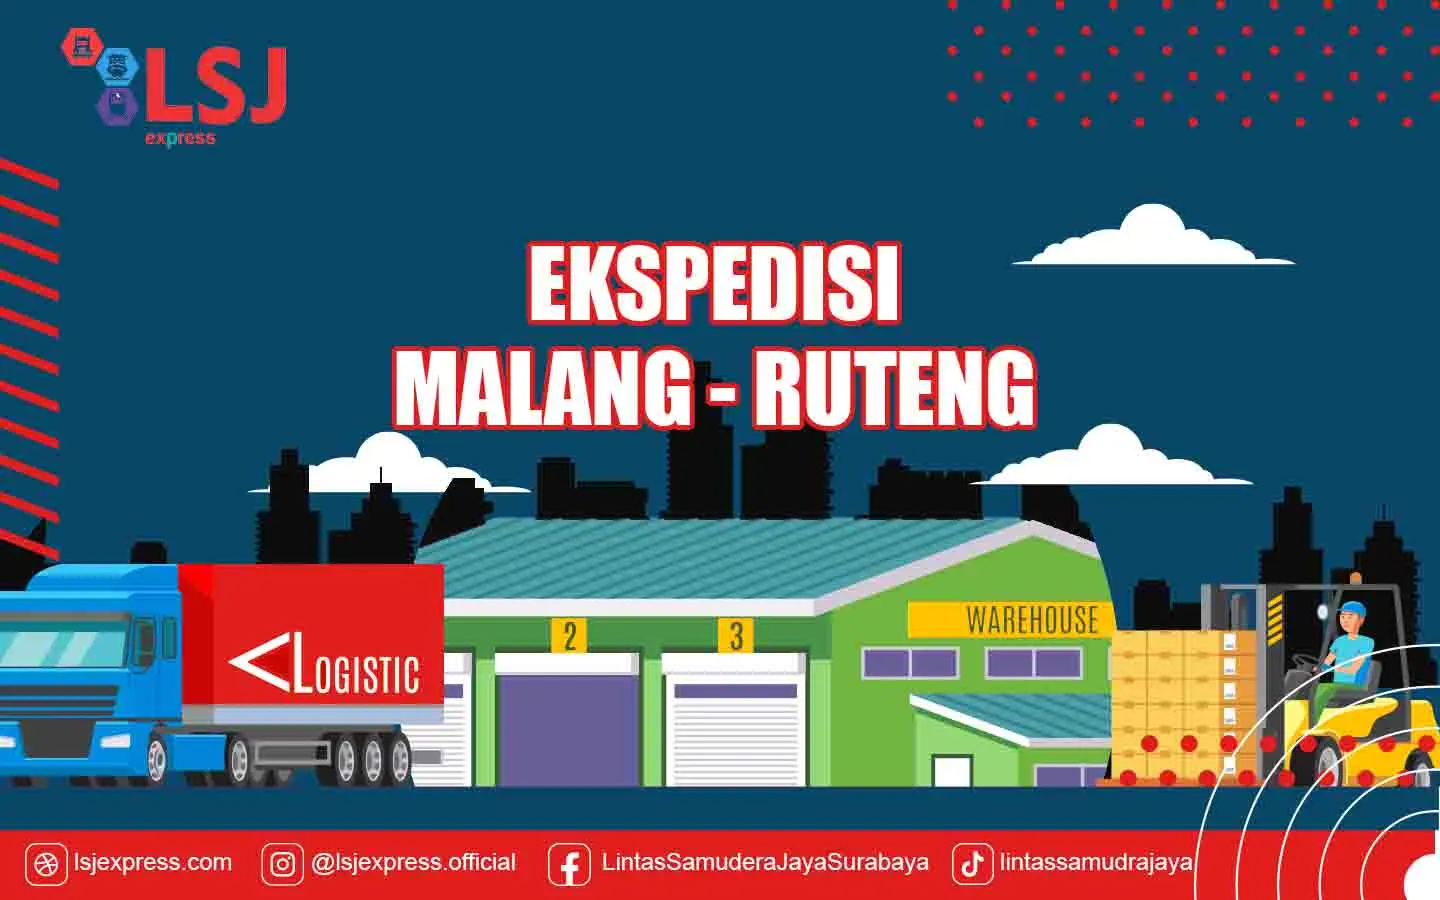 Ekspedisi Malang Ruteng